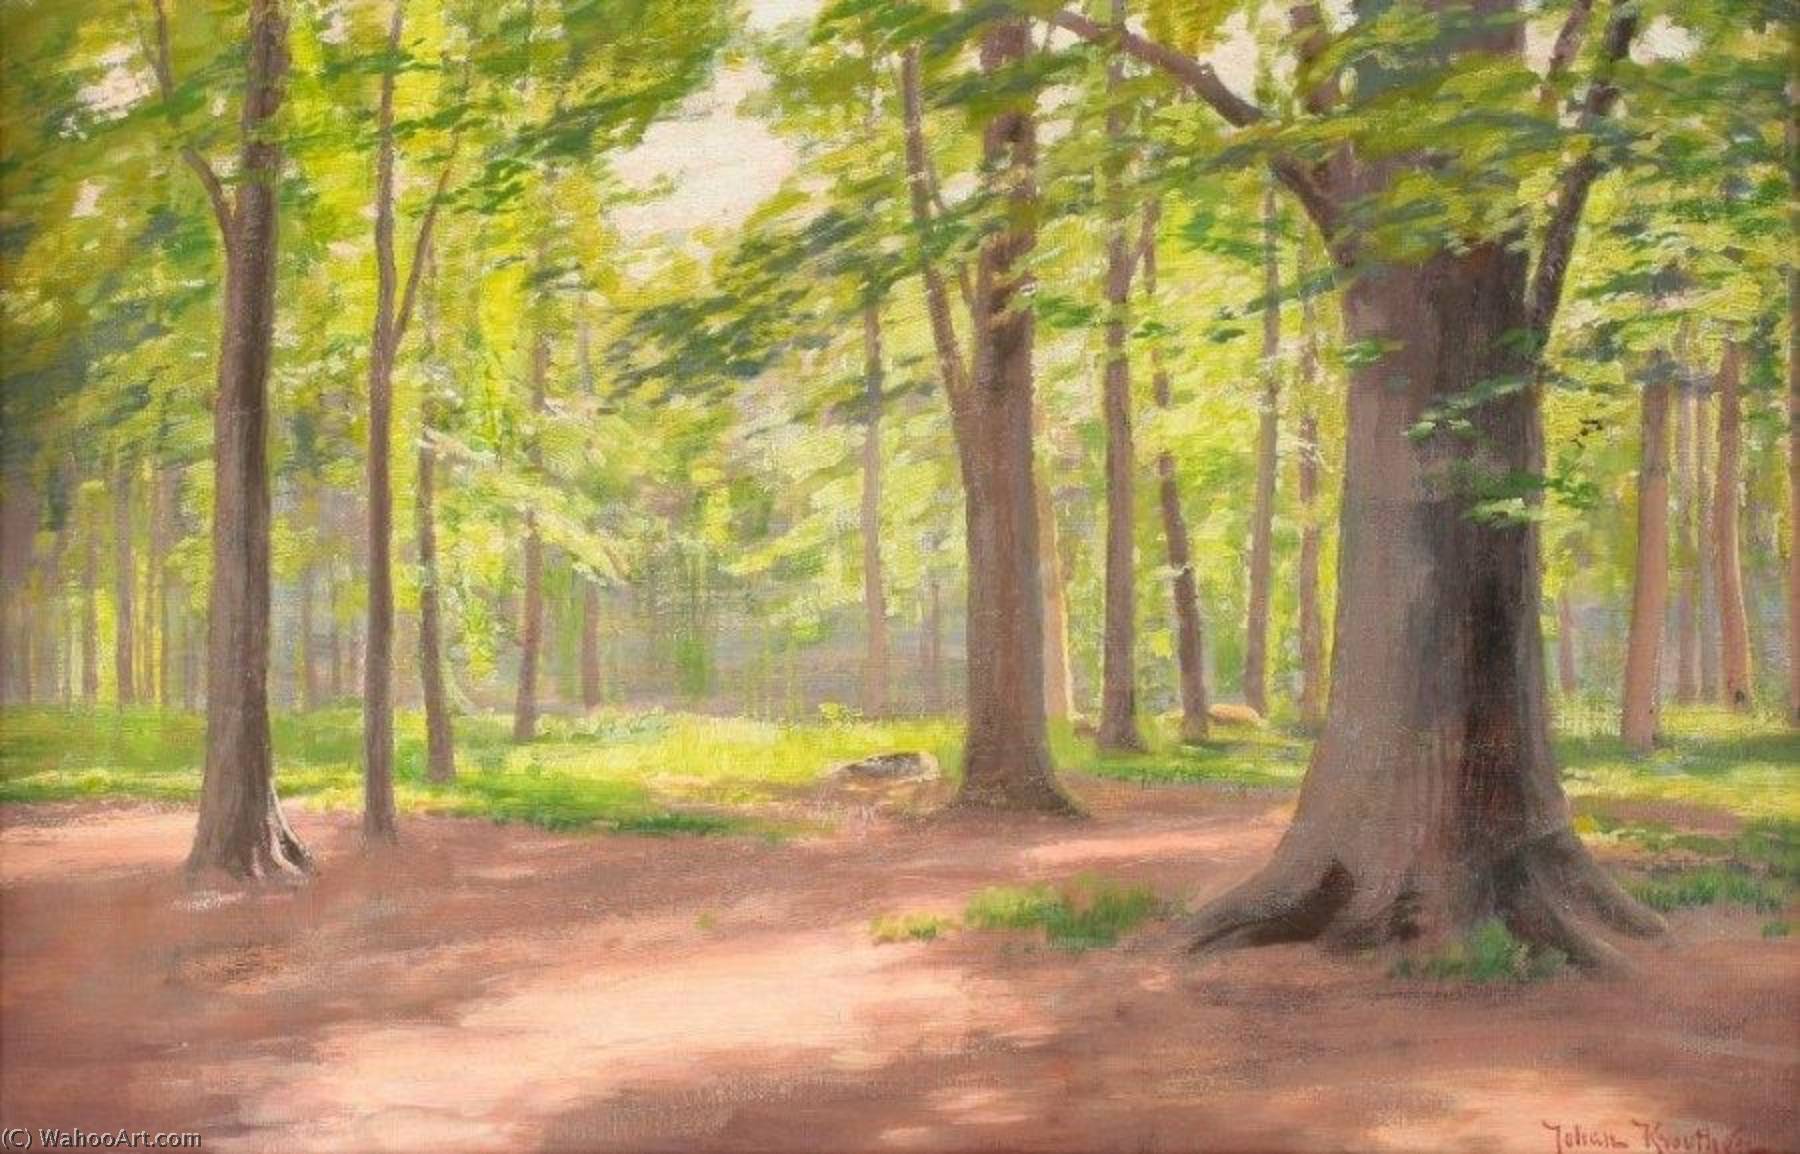 WikiOO.org - دایره المعارف هنرهای زیبا - نقاشی، آثار هنری Johan Krouthén - The Forest